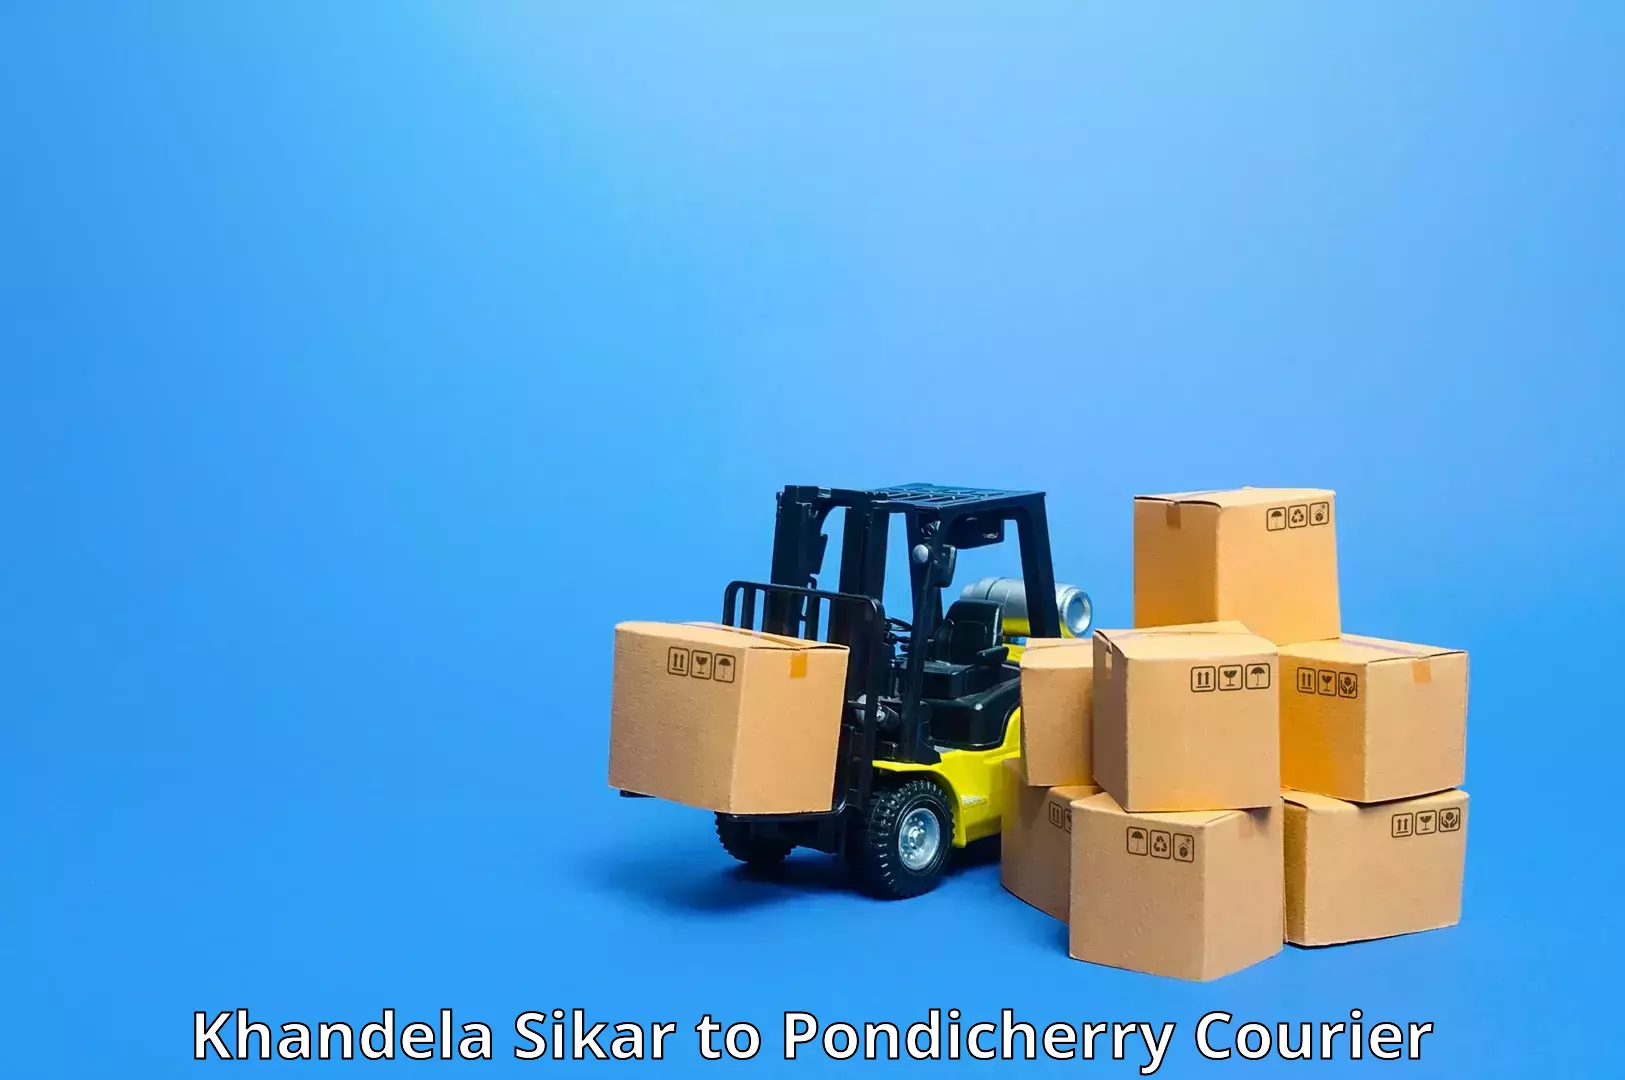 Holiday shipping services Khandela Sikar to Pondicherry